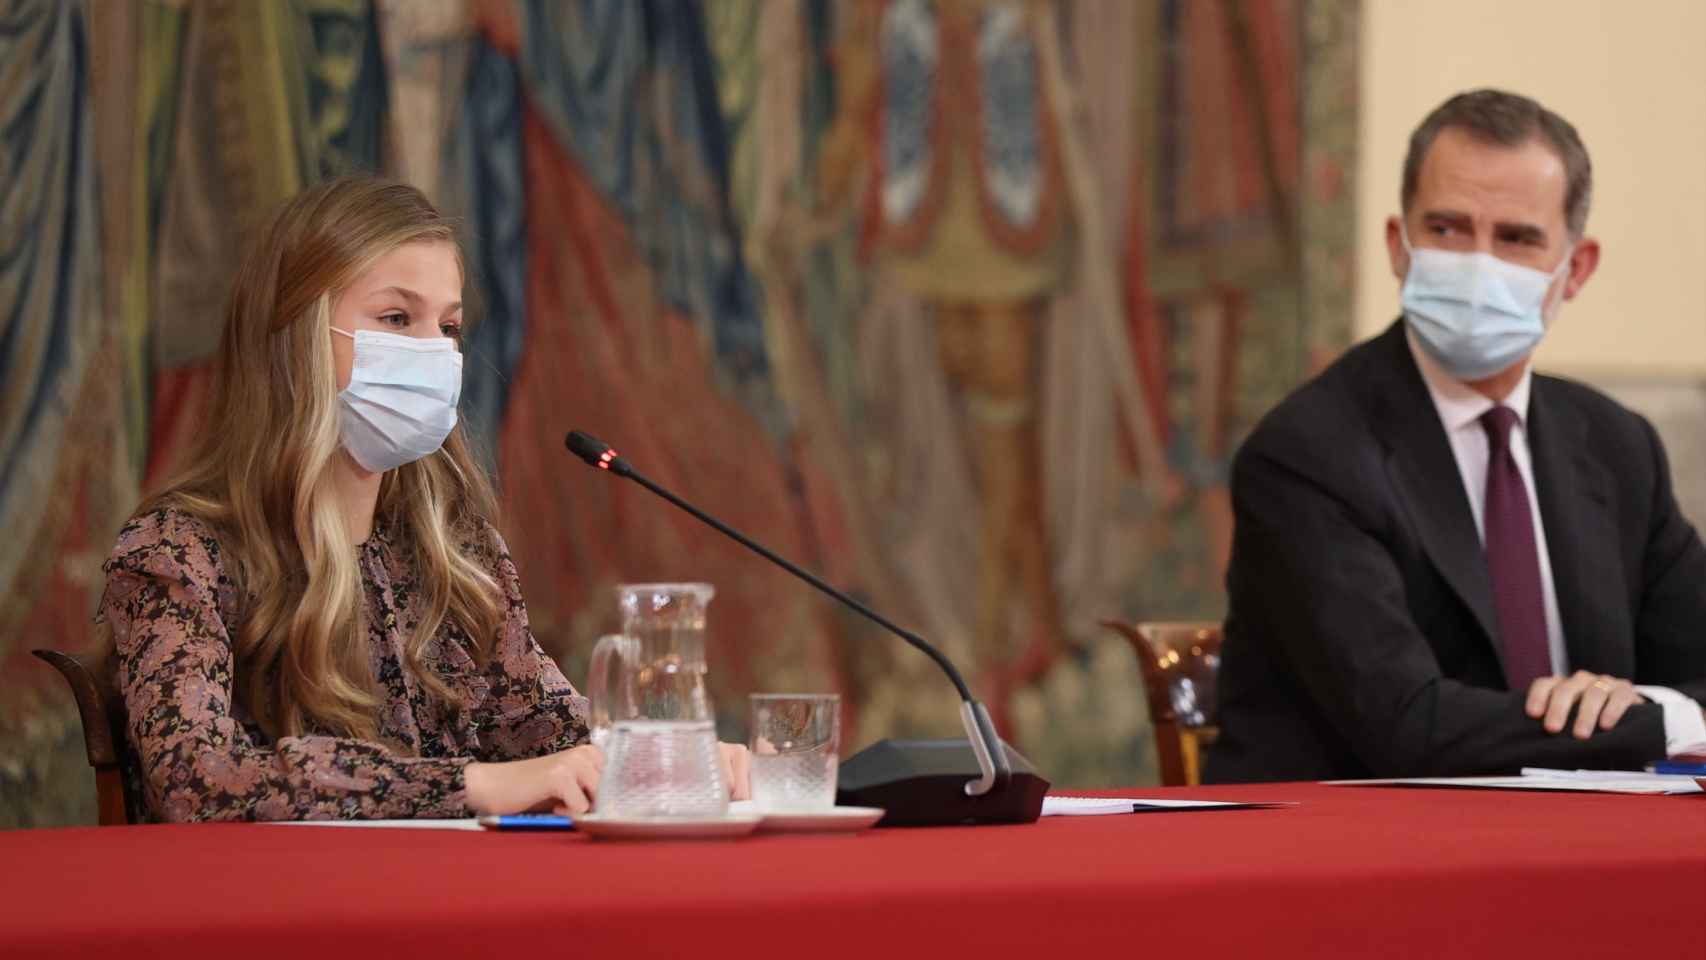 La princesa Leonor en su último acto institucional pronunciando unas palabras en catalán mientras el Rey la mira.